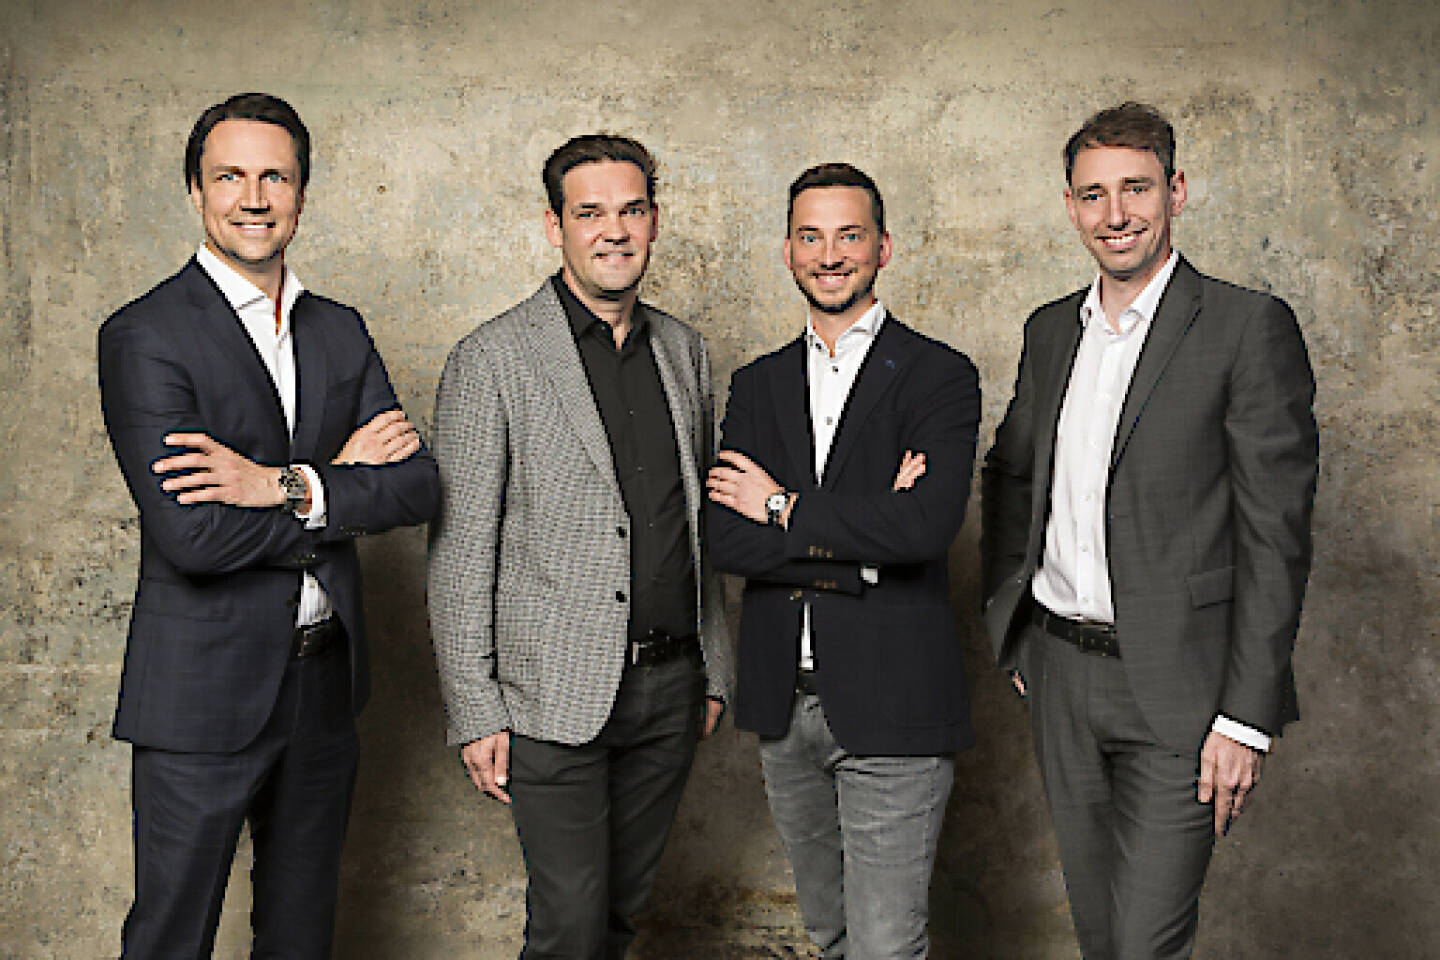 Ein Jahr nach ihrem letzten großen Mobile-Game-Exit stellen vier österreichische Unternehmer ab sofort fünf Millionen Euro bereit, um die heimische Entwicklerszene zu befeuern; im Bild: Das Editors' Choice-Team. Credit: Editors Choice | WOLFGANG HUMMER